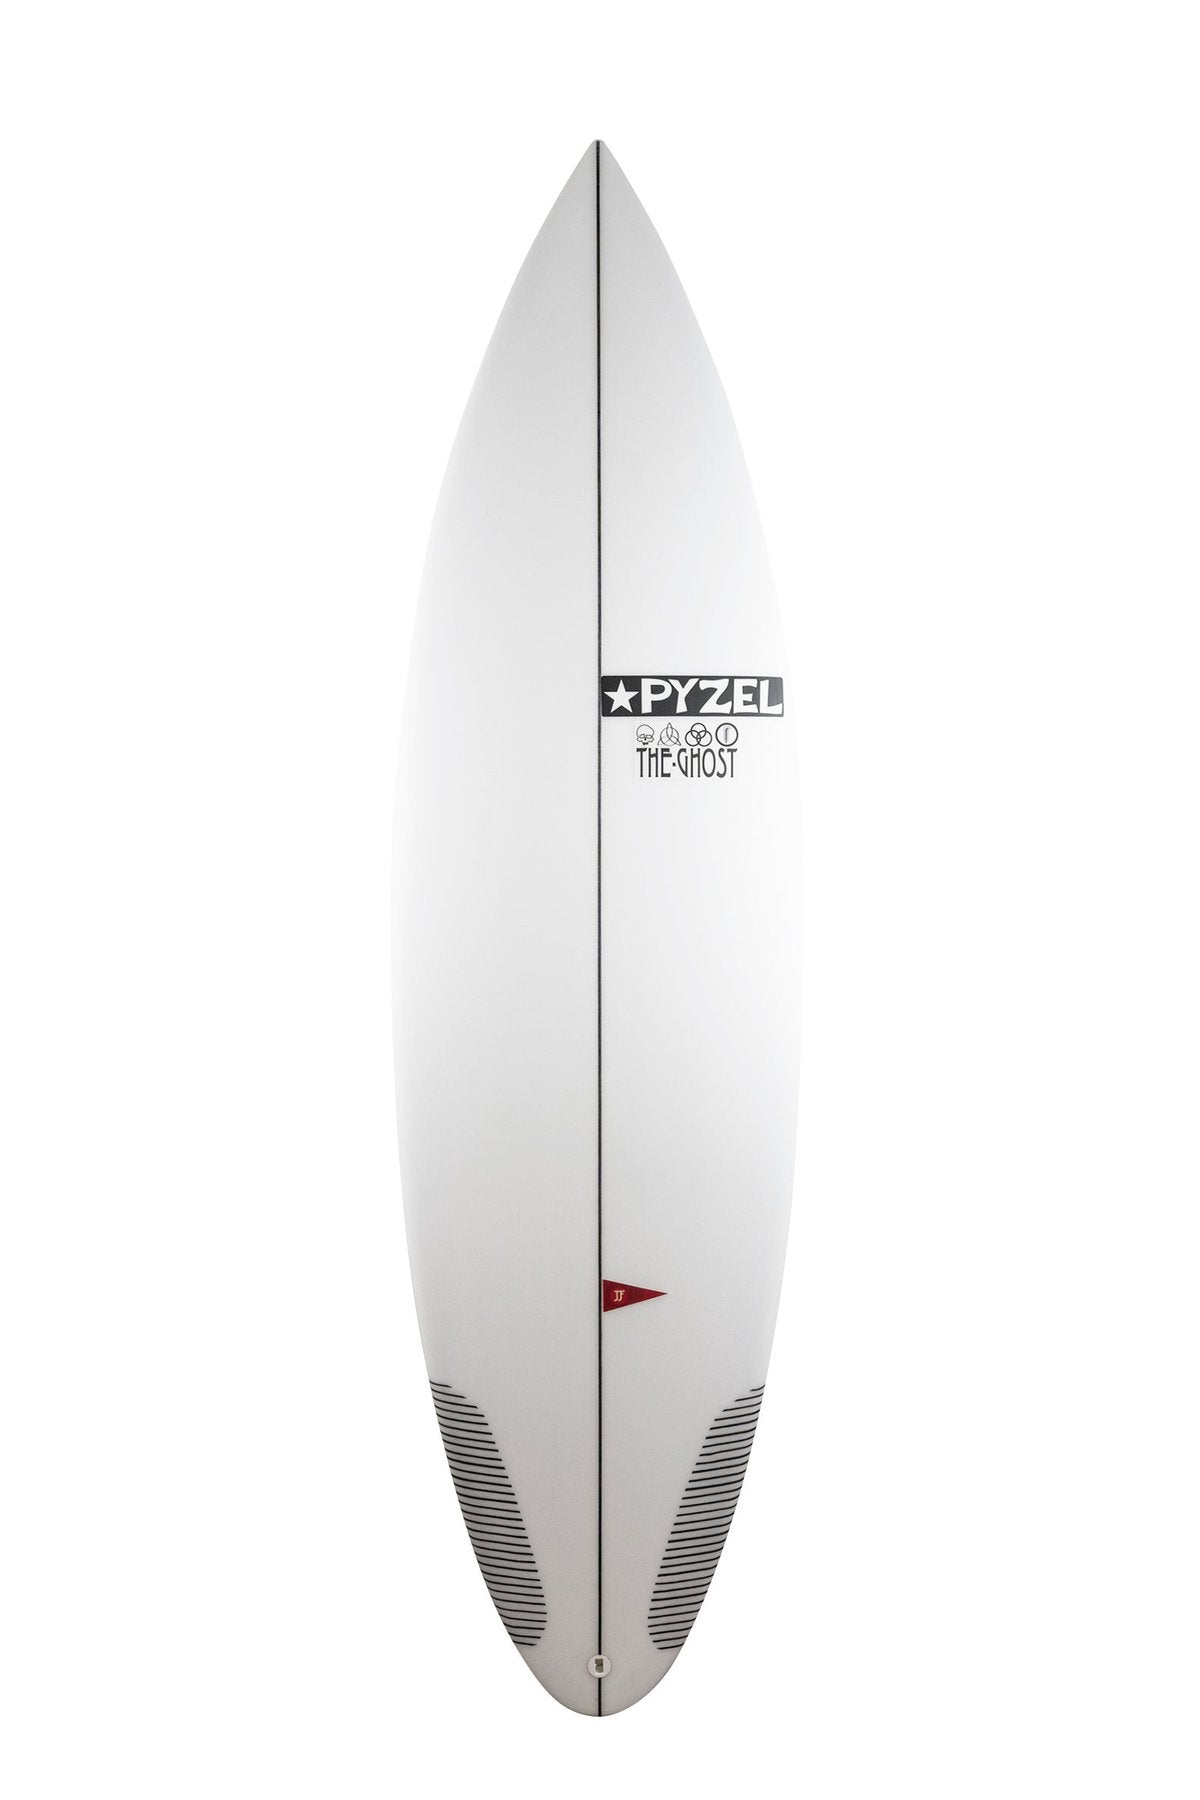 Planche de surf Occasion Pyzel Ghost 6'0" 27L